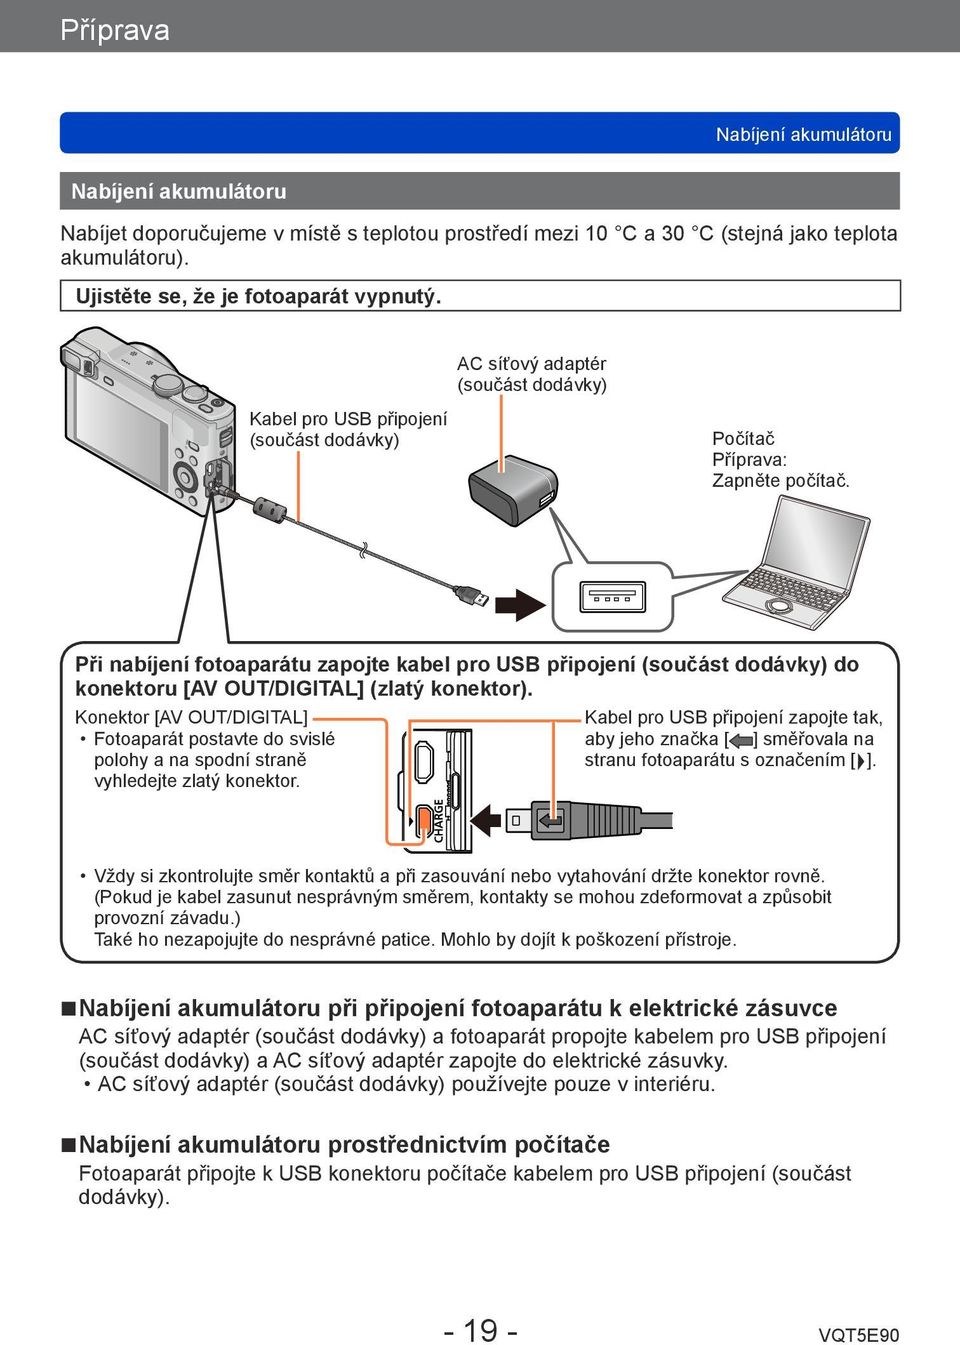 Při nabíjení fotoaparátu zapojte kabel pro USB připojení (součást dodávky) do konektoru [AV OUT/DIGITAL] (zlatý konektor).